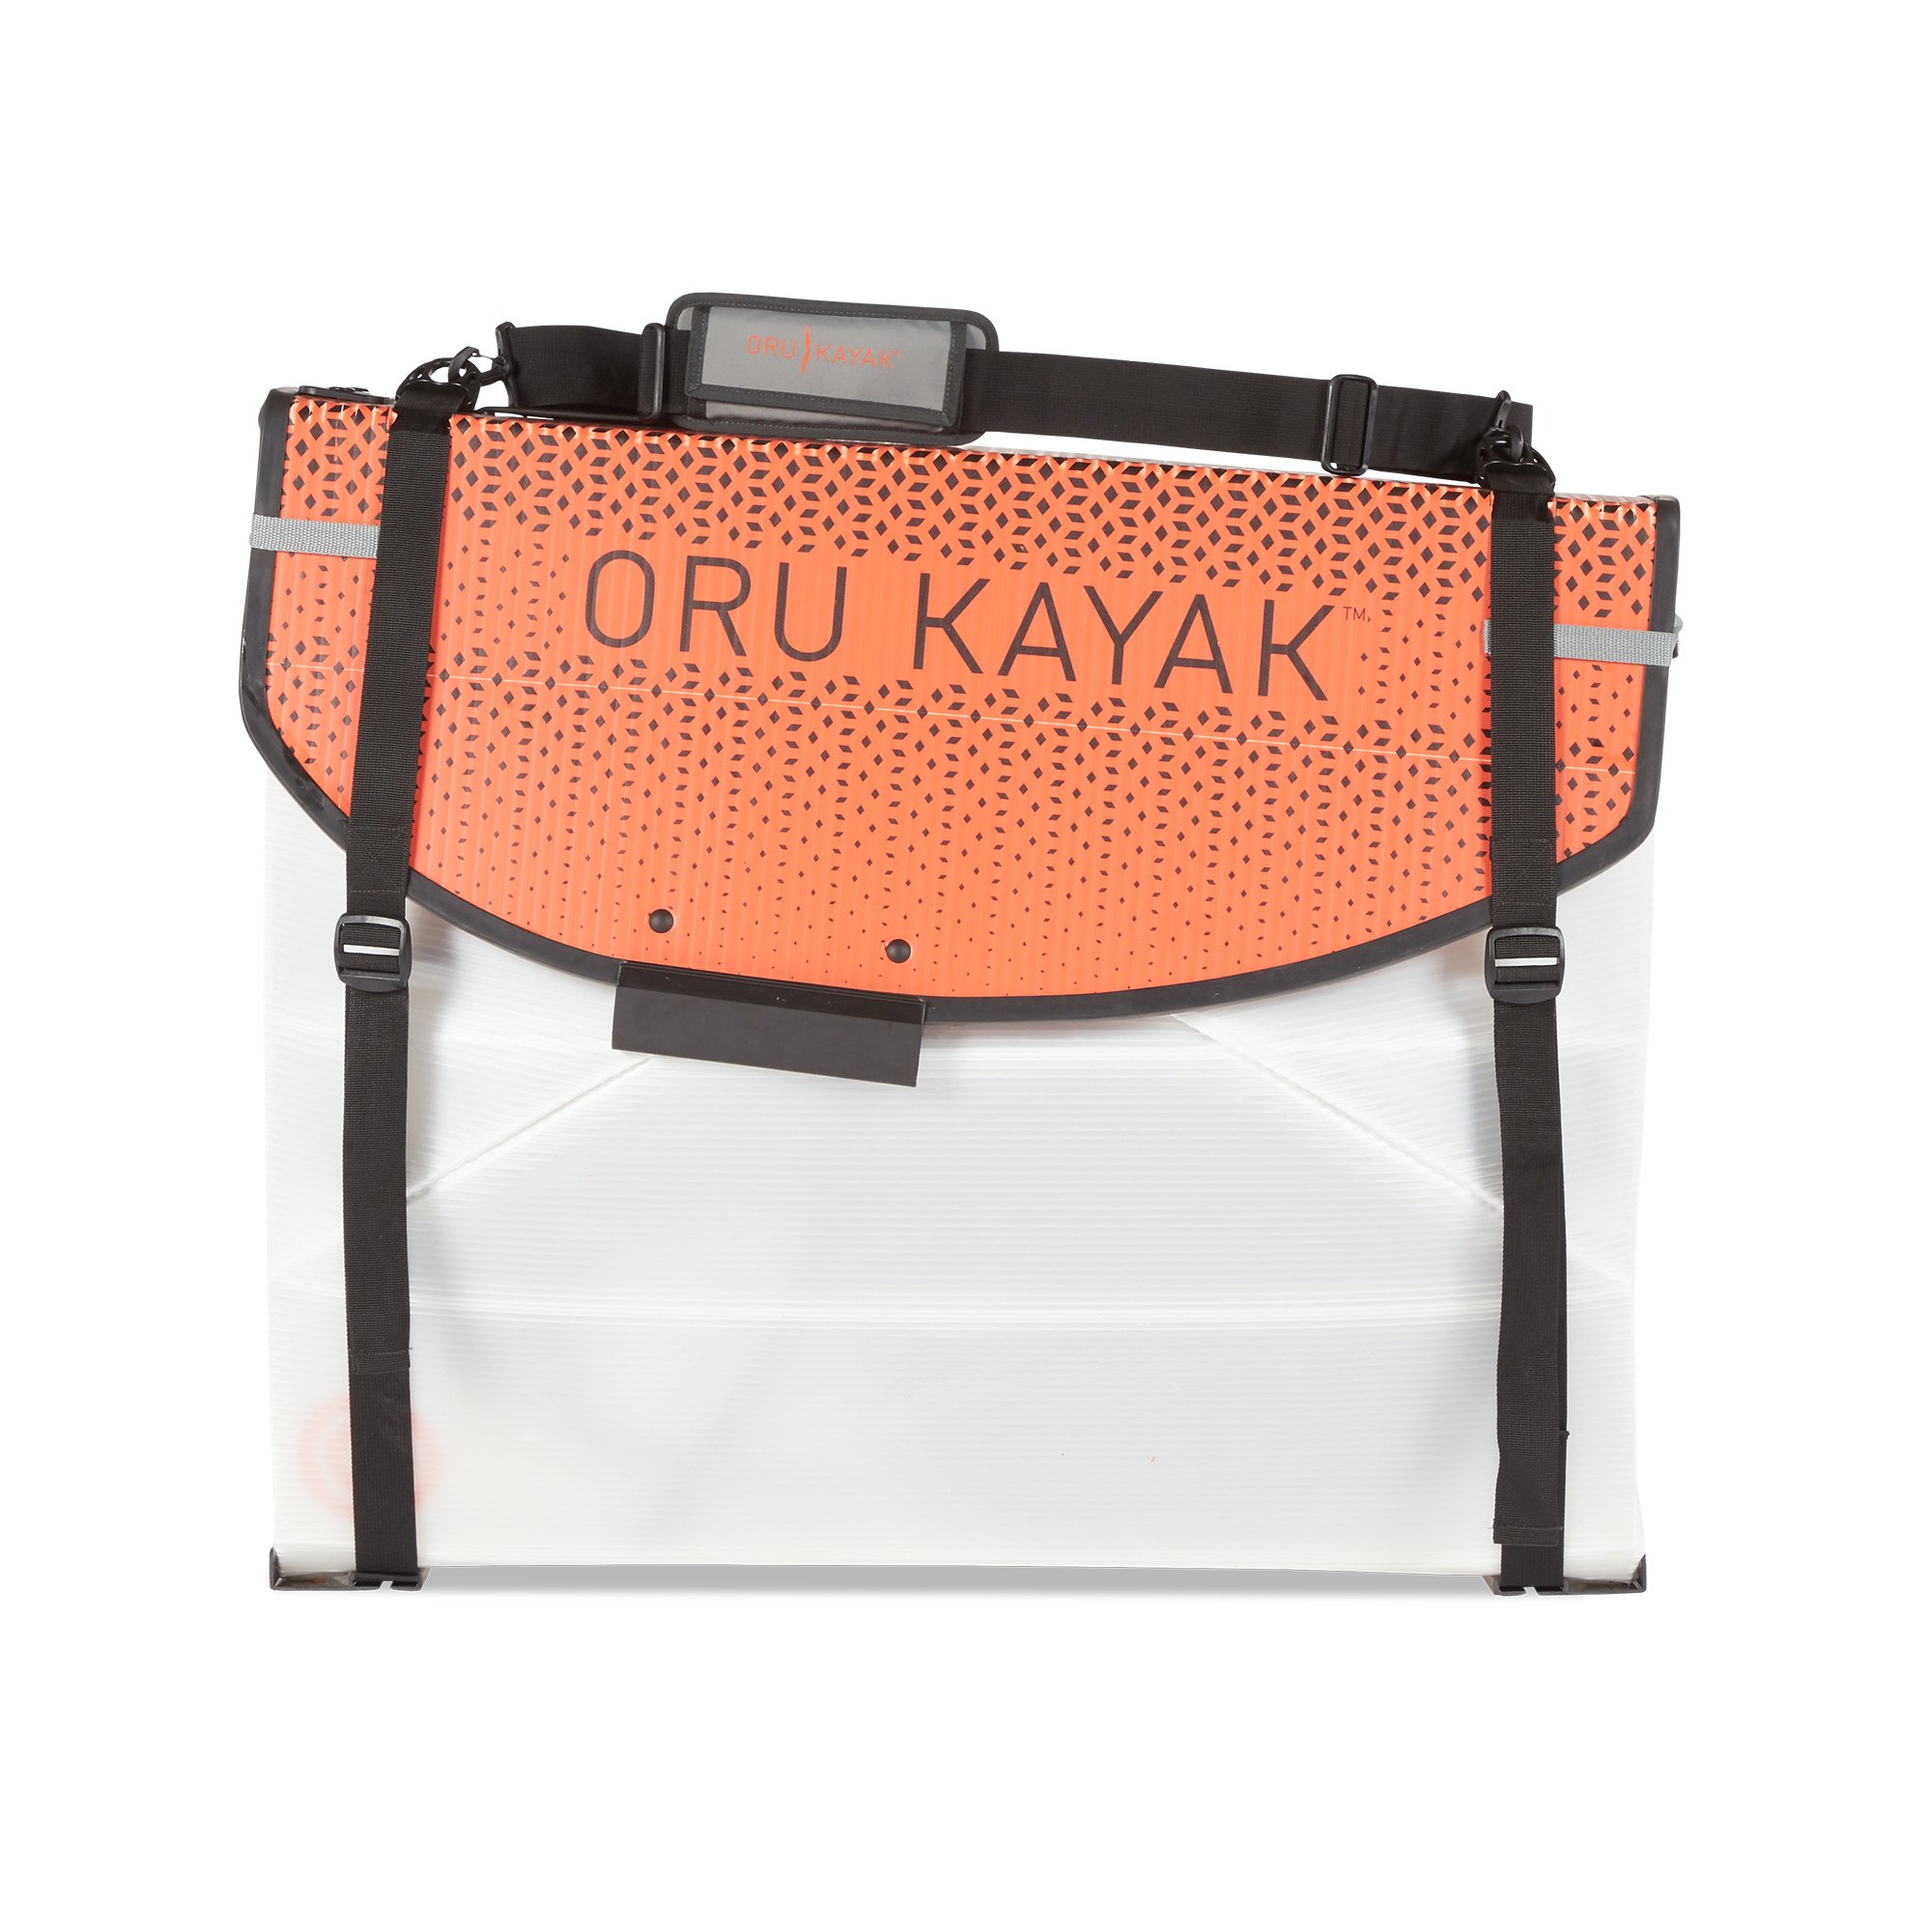 orukayak coast valise